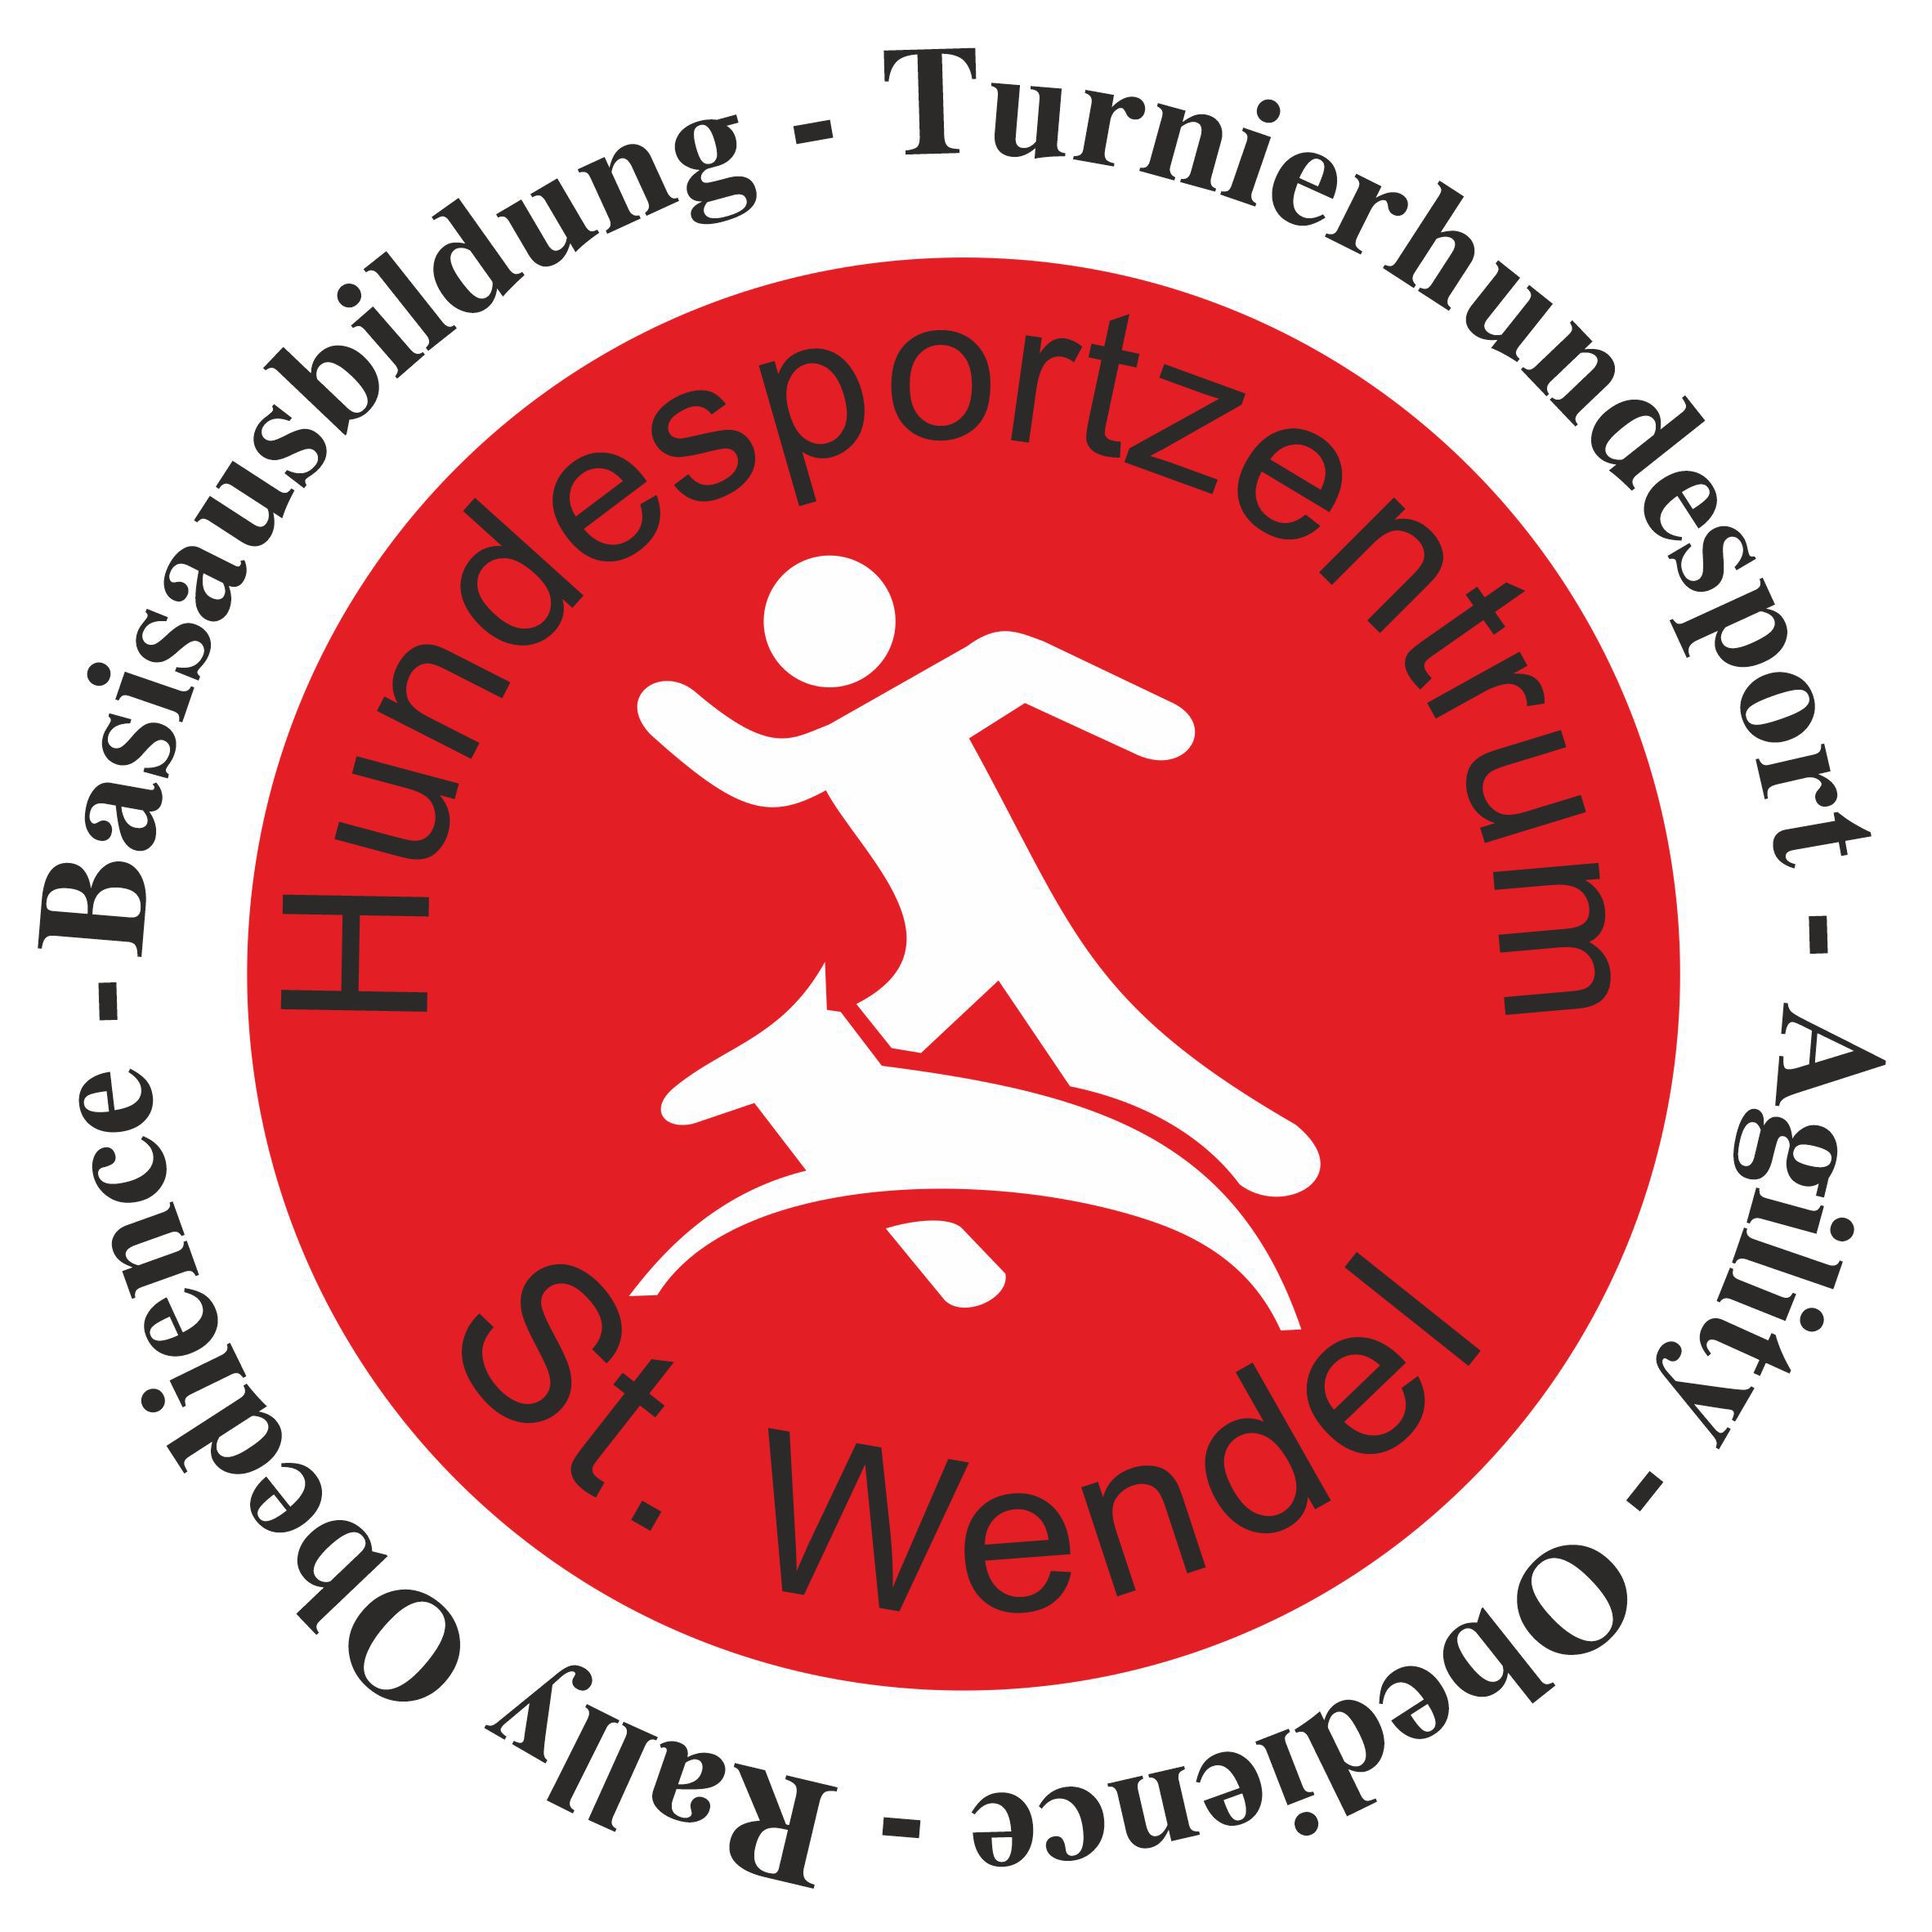 Profilbild des Vereins Hundesportzentrum St. Wendel